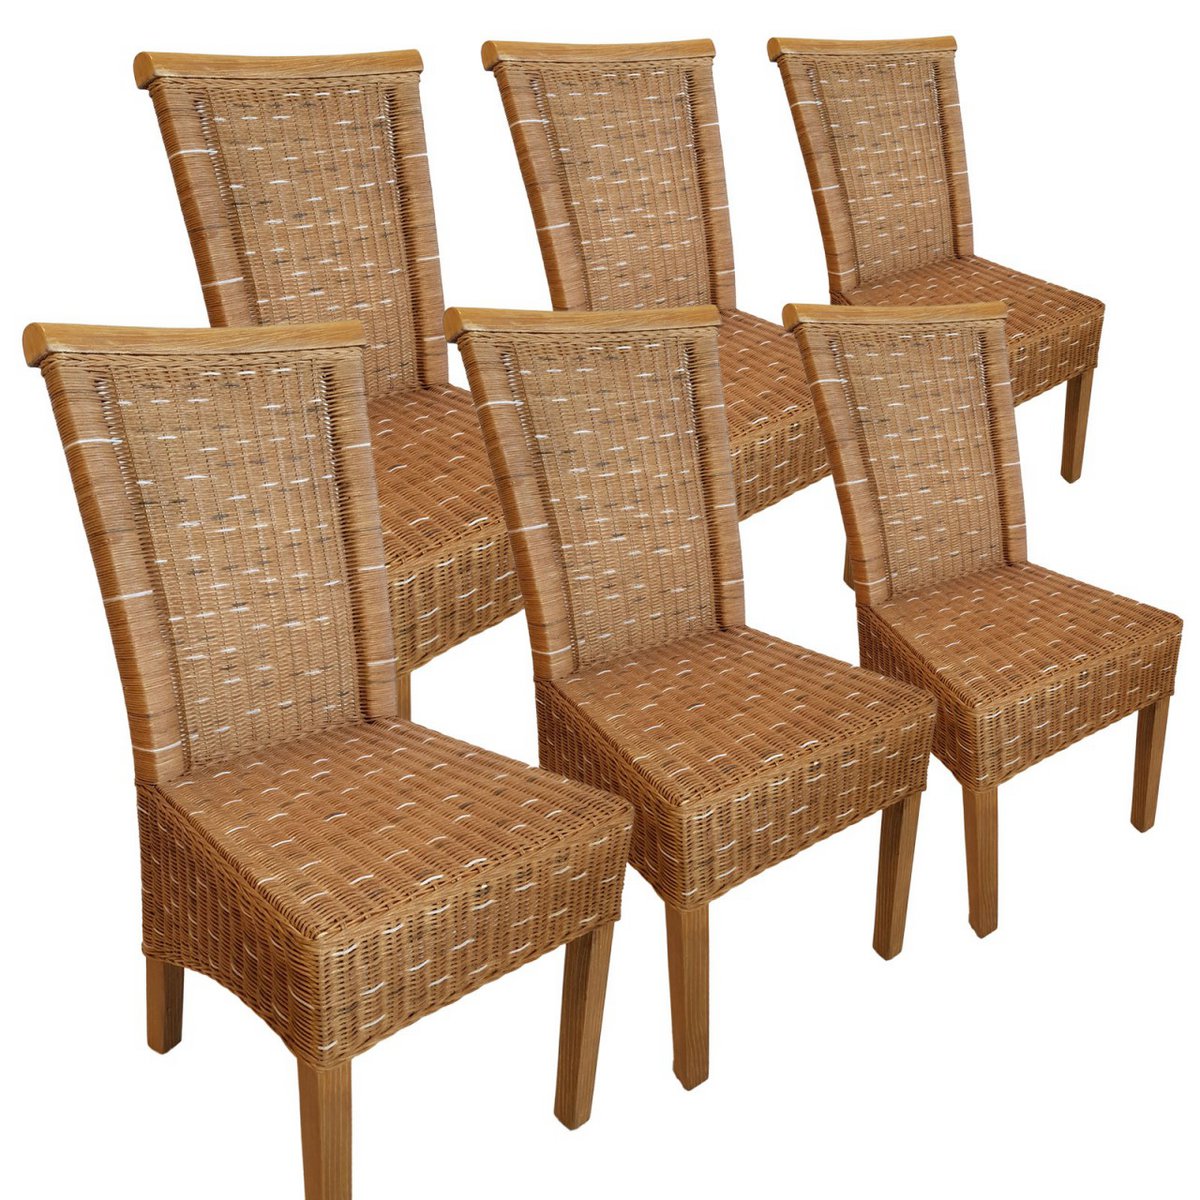 Esszimmer-Stühle Set Rattanstühle Perth 6 Stück braun Sitzkissen Leinen weiß